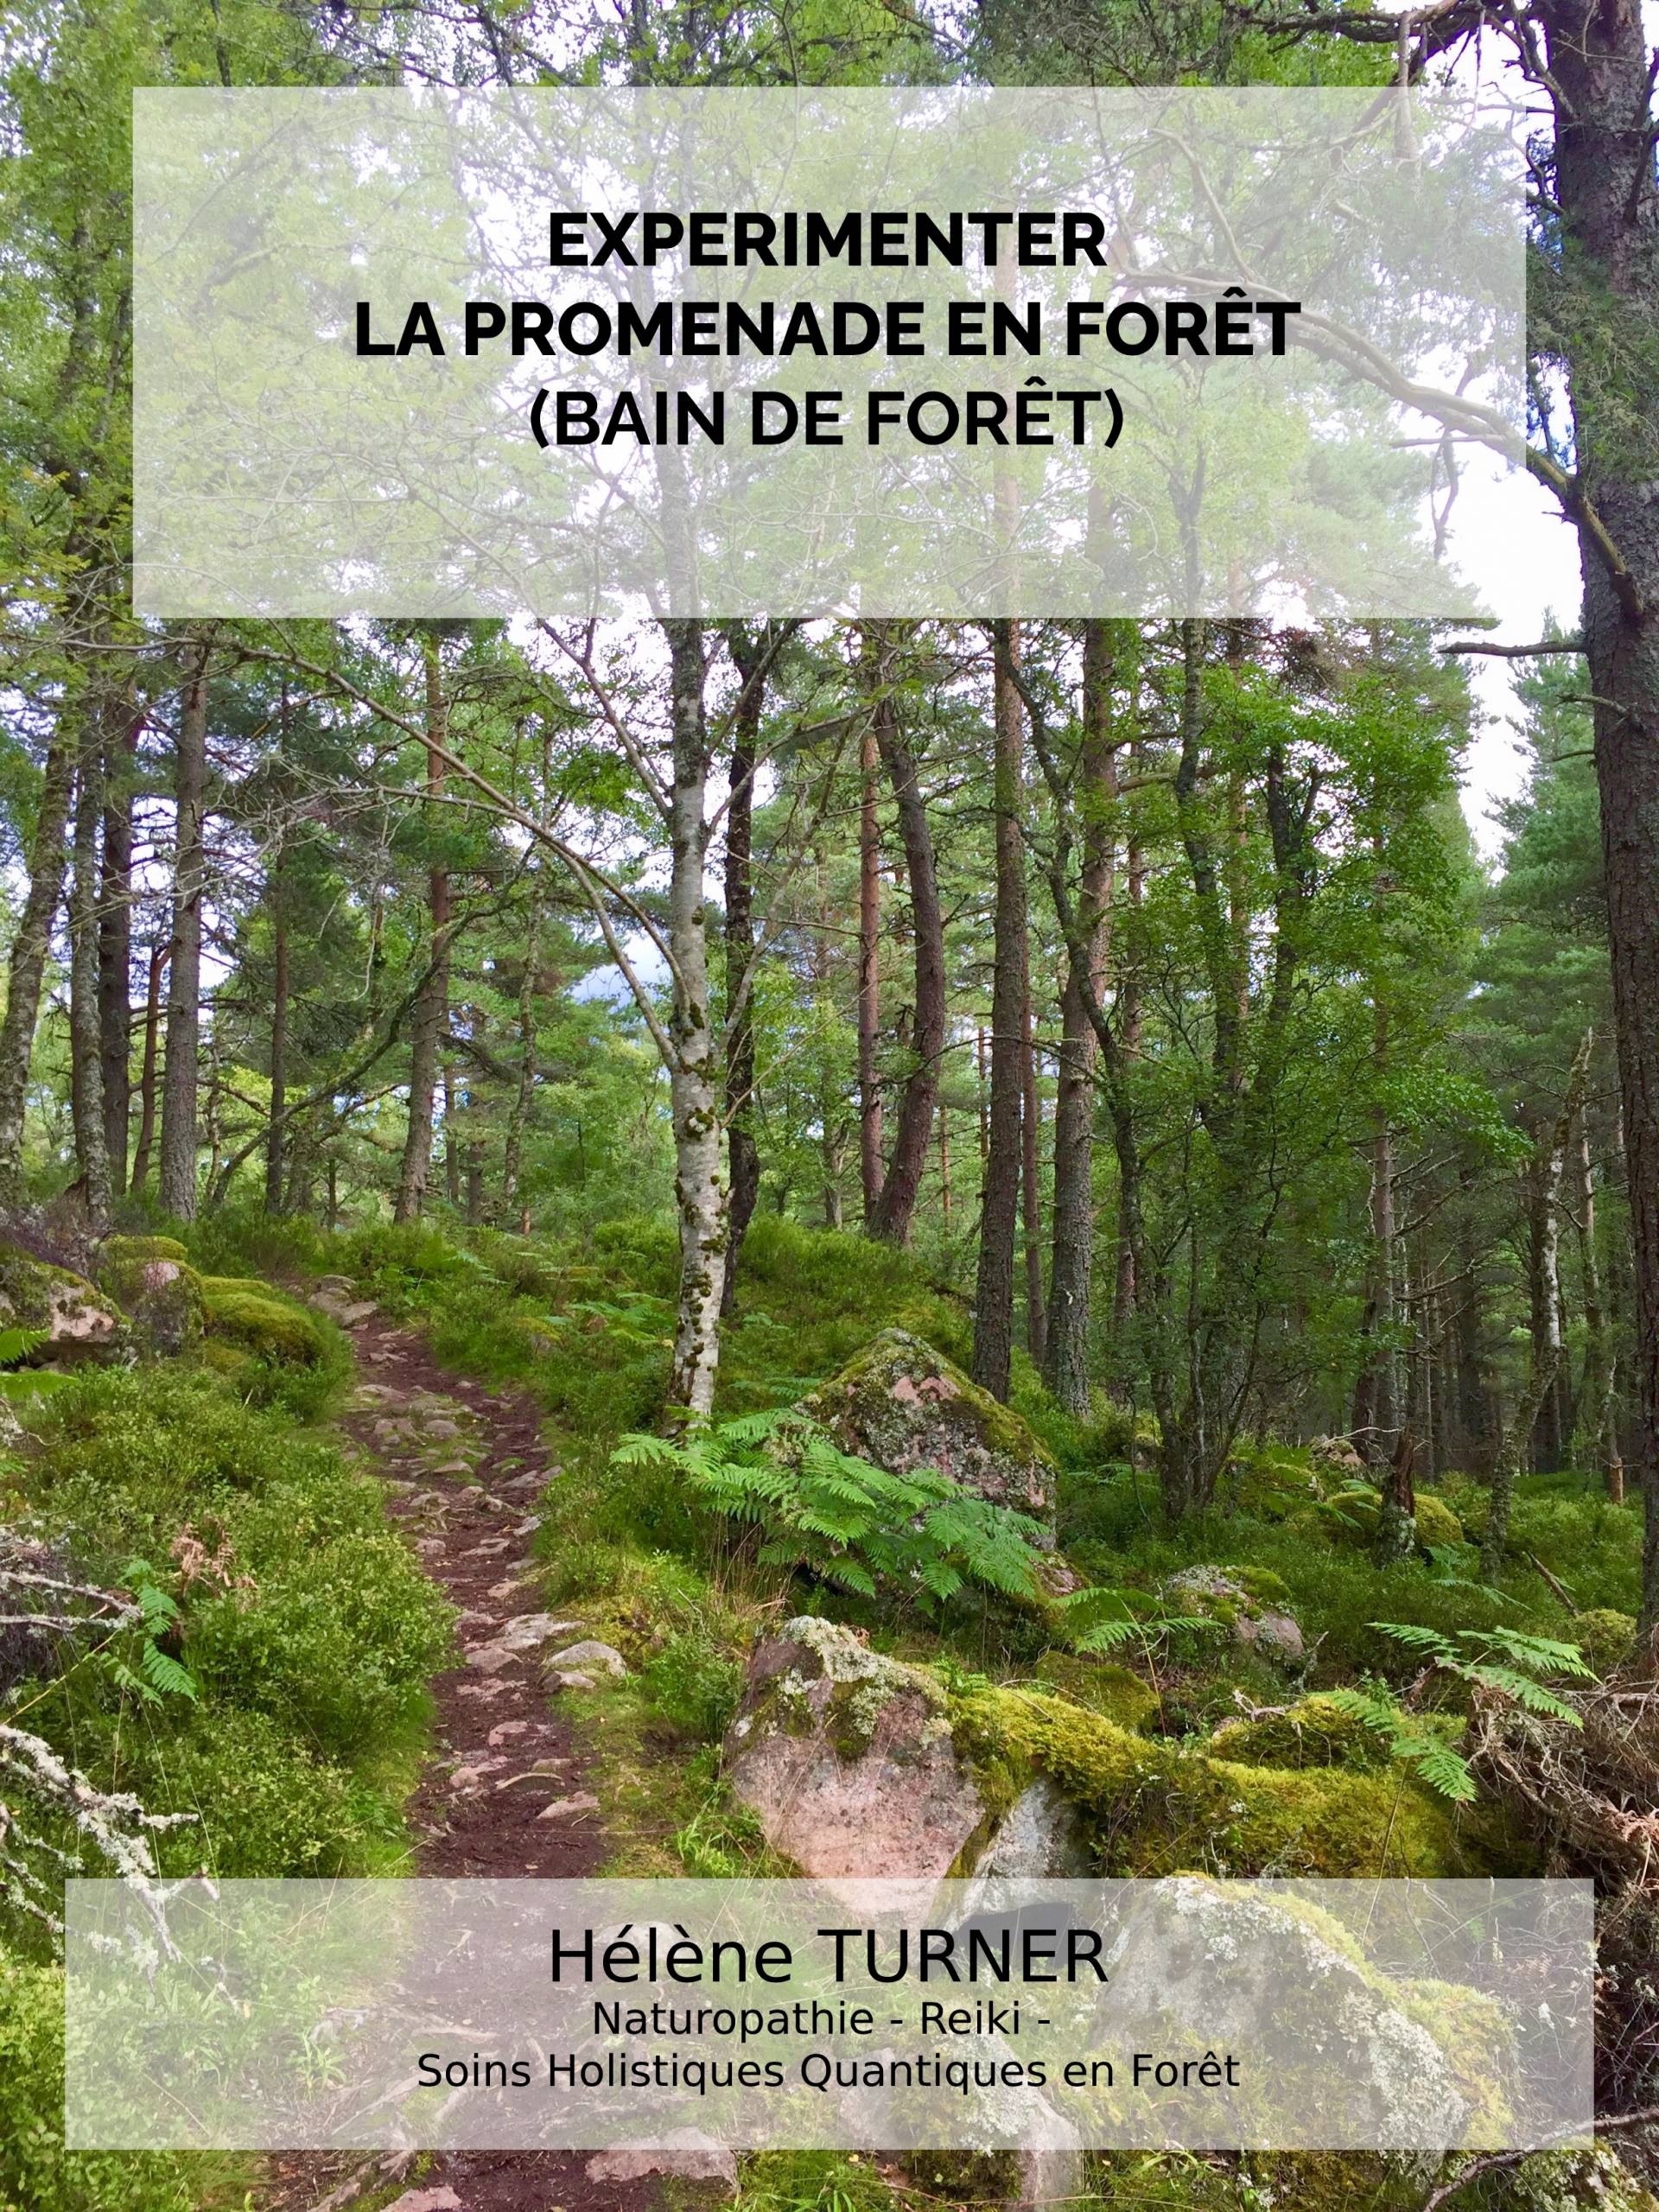 Hélène TURNER - Naturopathie - Reiki - Soins holistiques et quantiques en forêt : Que diriez-vous d’expérimenter la promenade en forêt ? La forêt est un de mes lieux préférés pour me ressourcer et faire des soins.